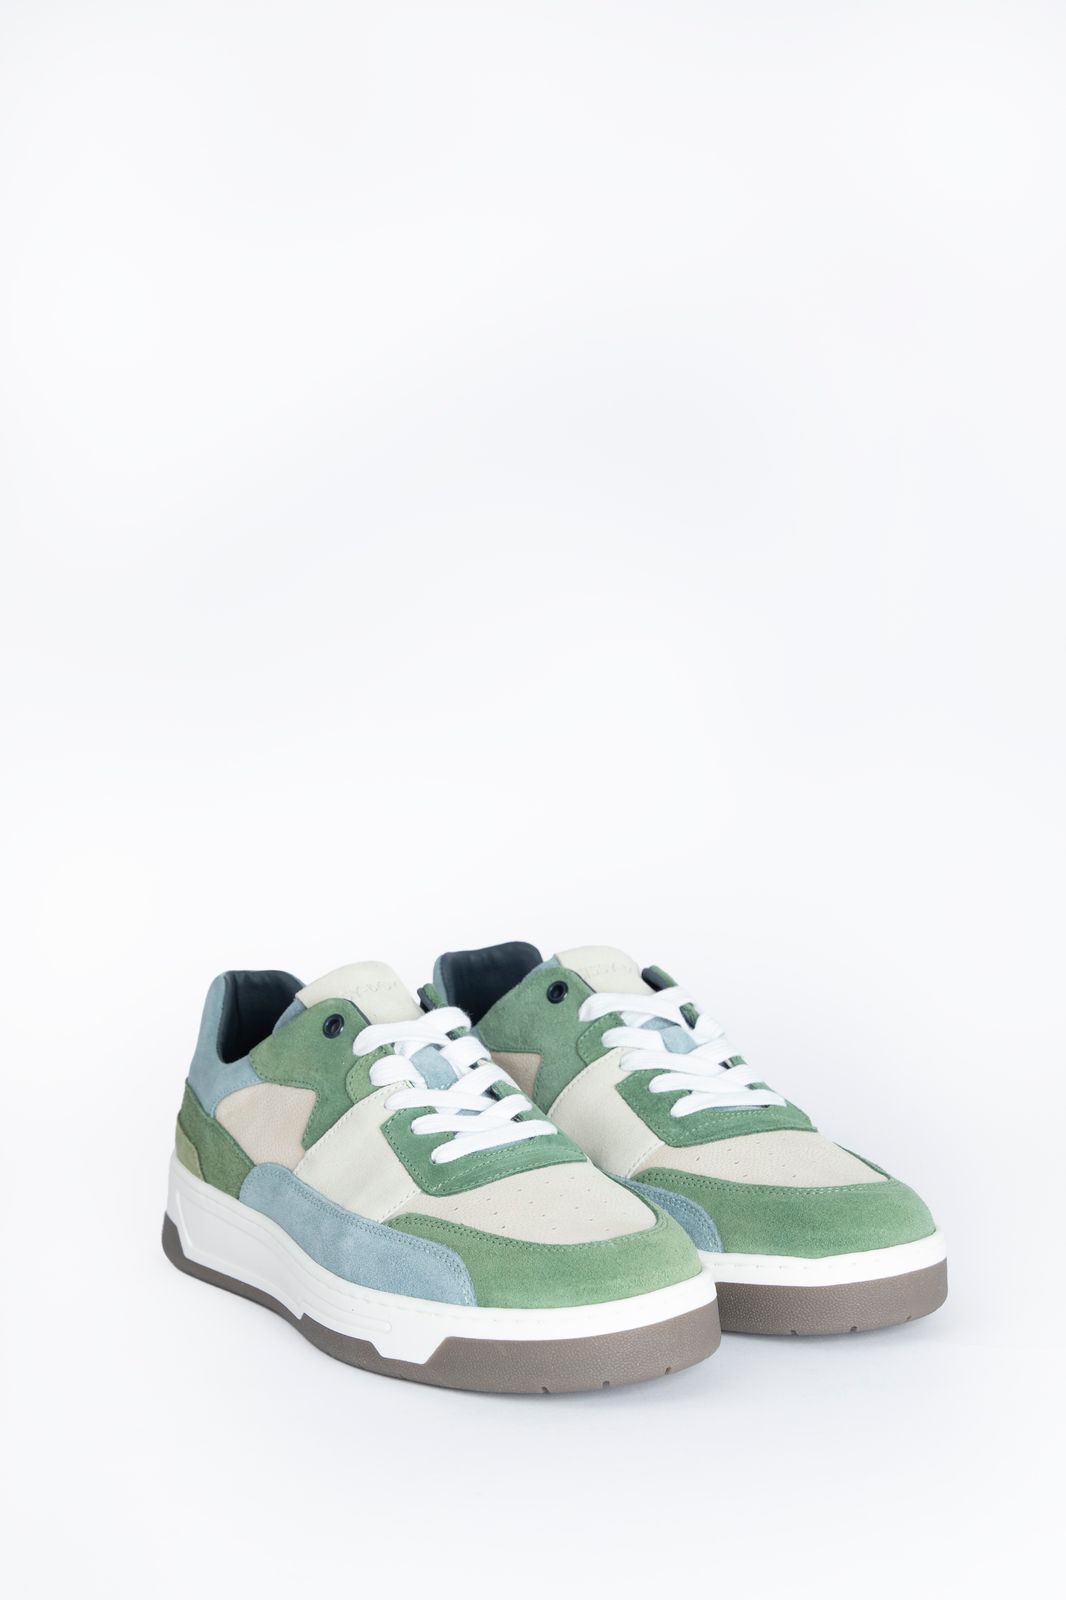 Veloursleder-Sneaker mit blauen Details - grün